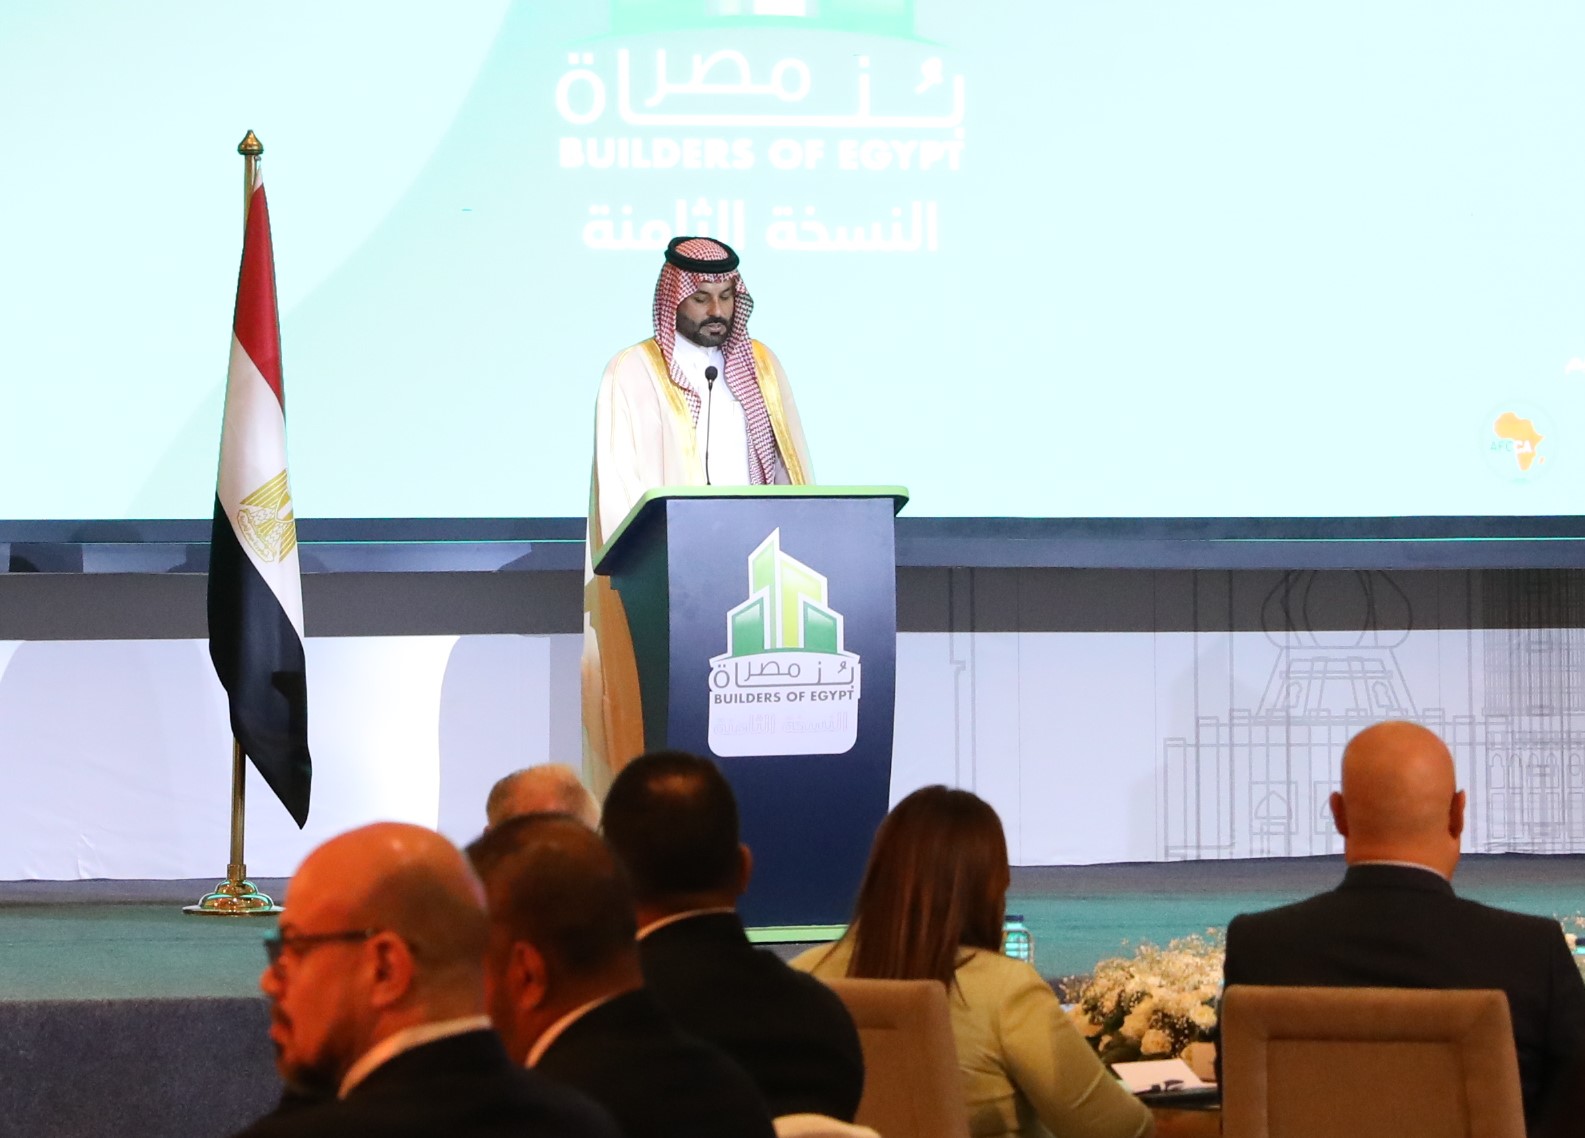 الهيئة السعودية للمقاولين تعلن إطلاق منصة لتعزيز الشراكات في مجال التشييد والبناء